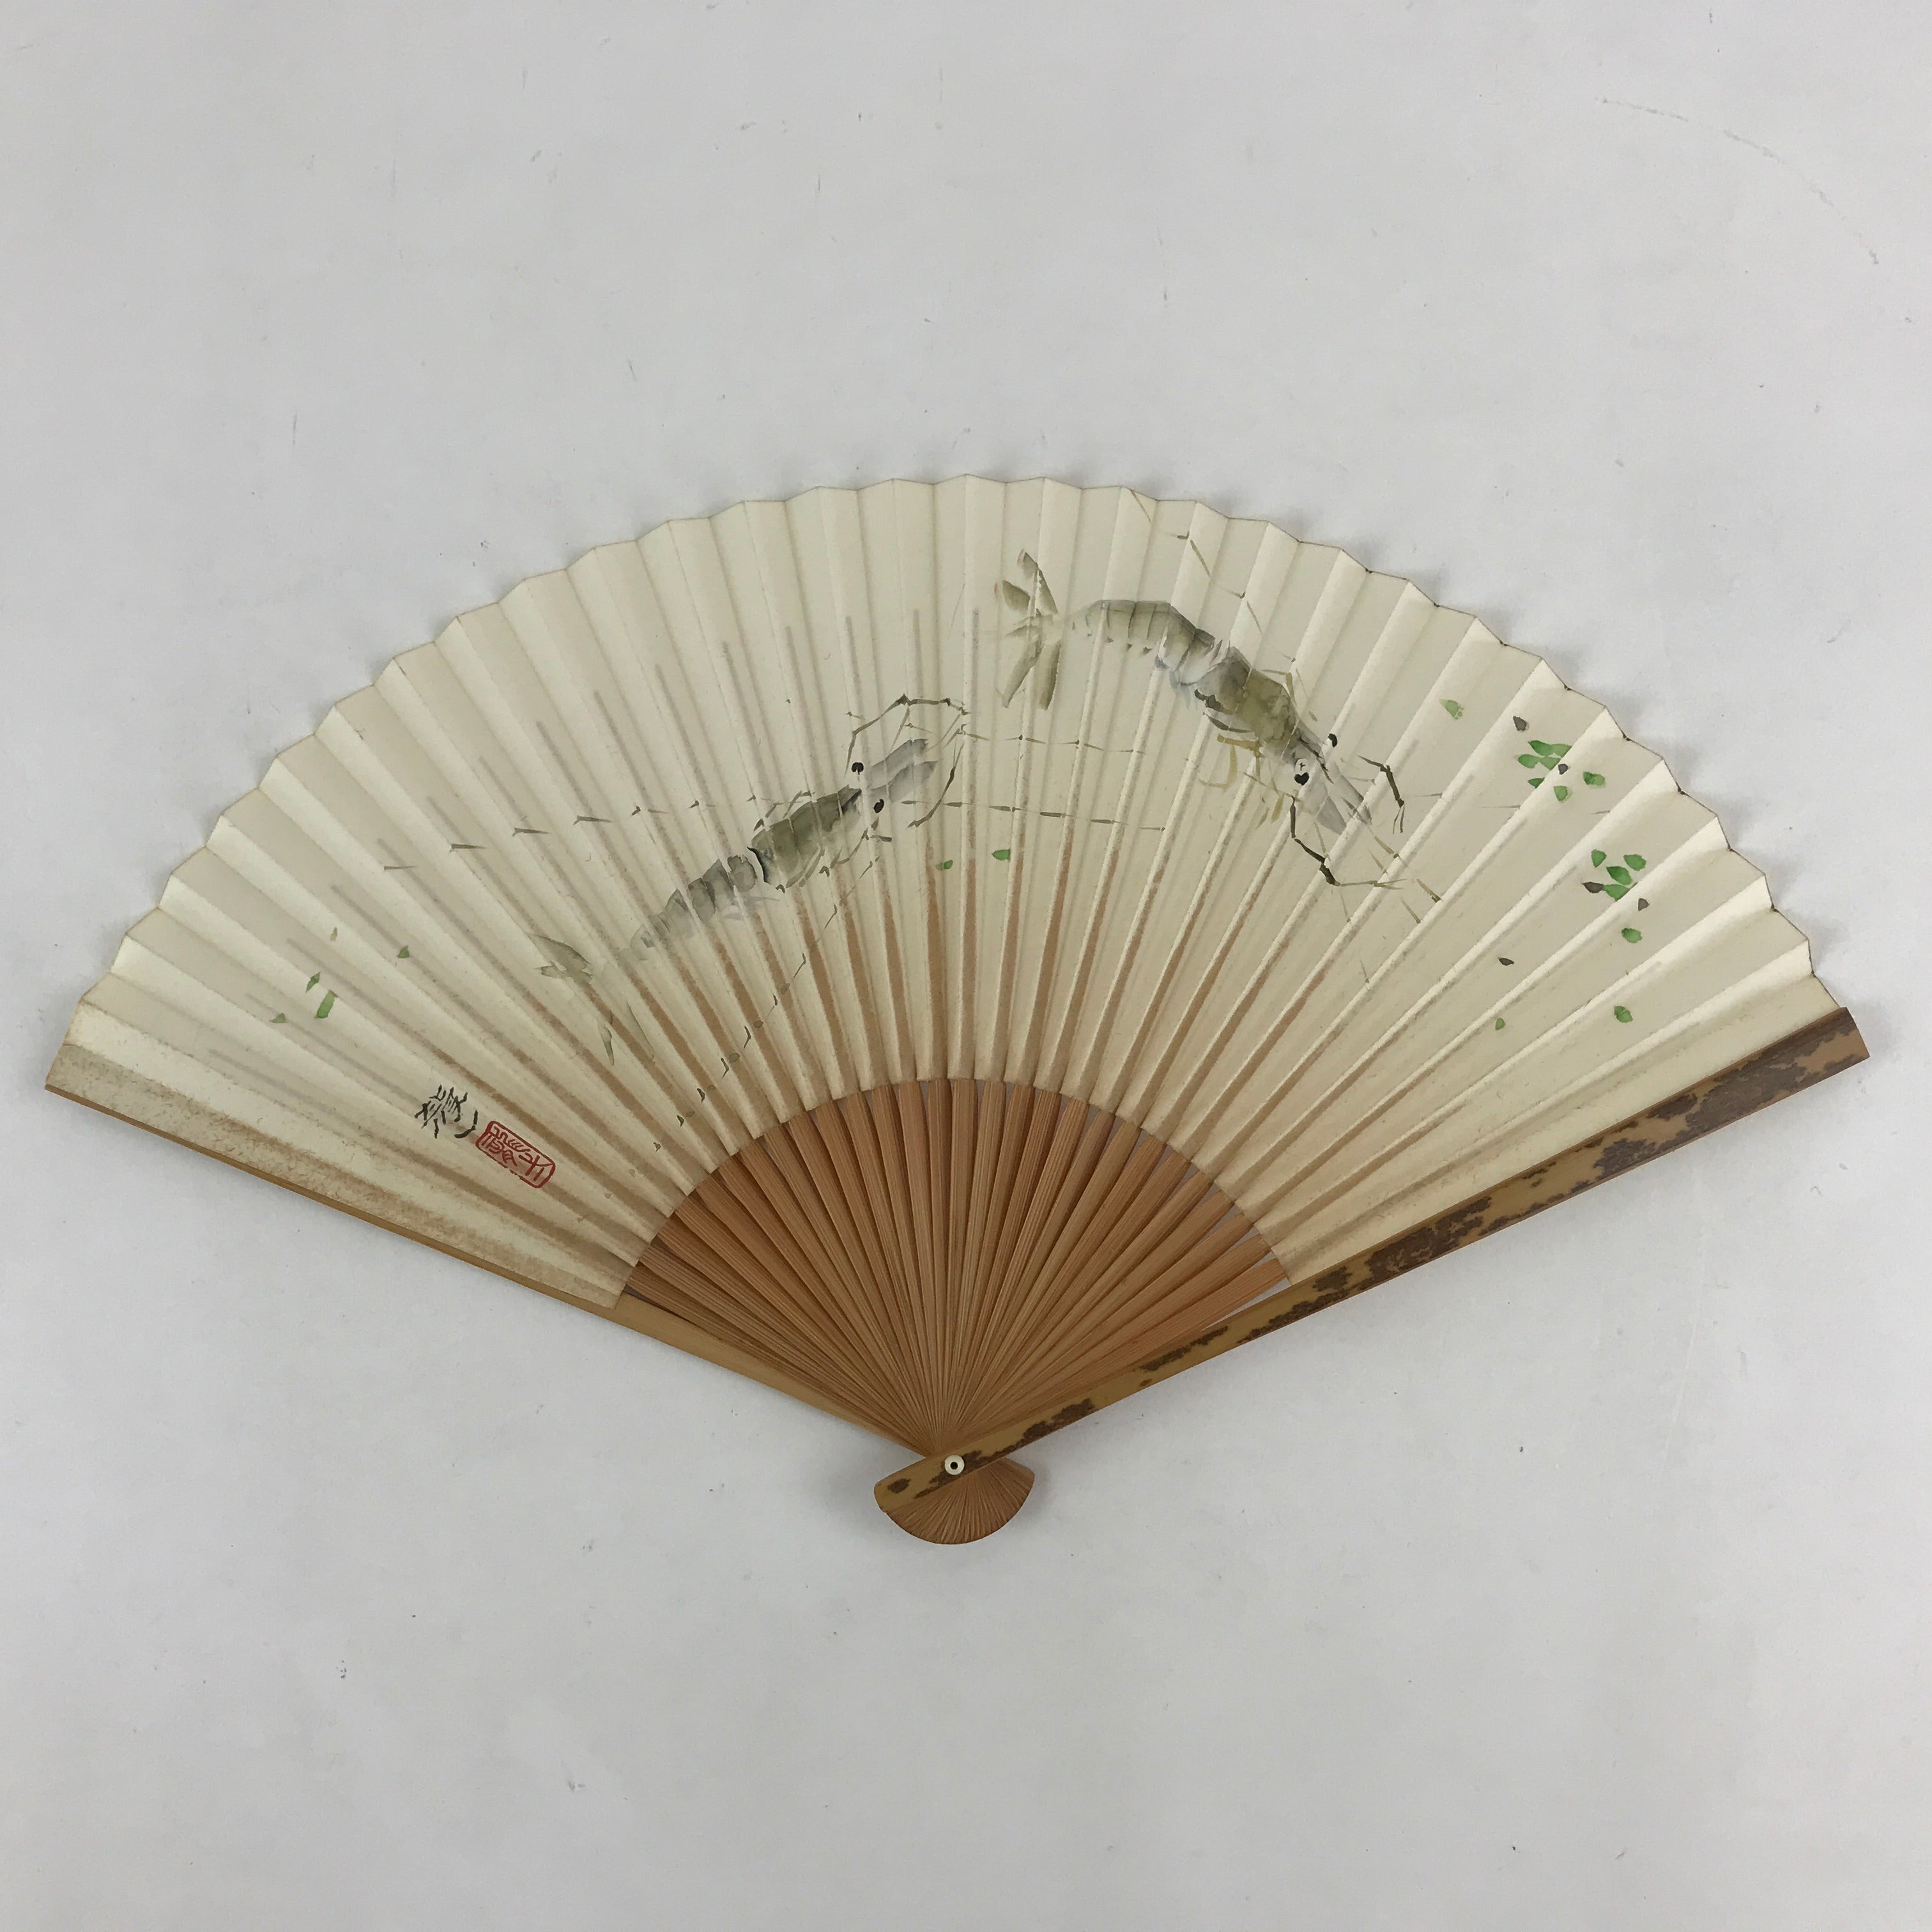 Japanese Folding Fan Sensu Vtg Bamboo Frame Shrimps Kanji Red Seal White 4D682